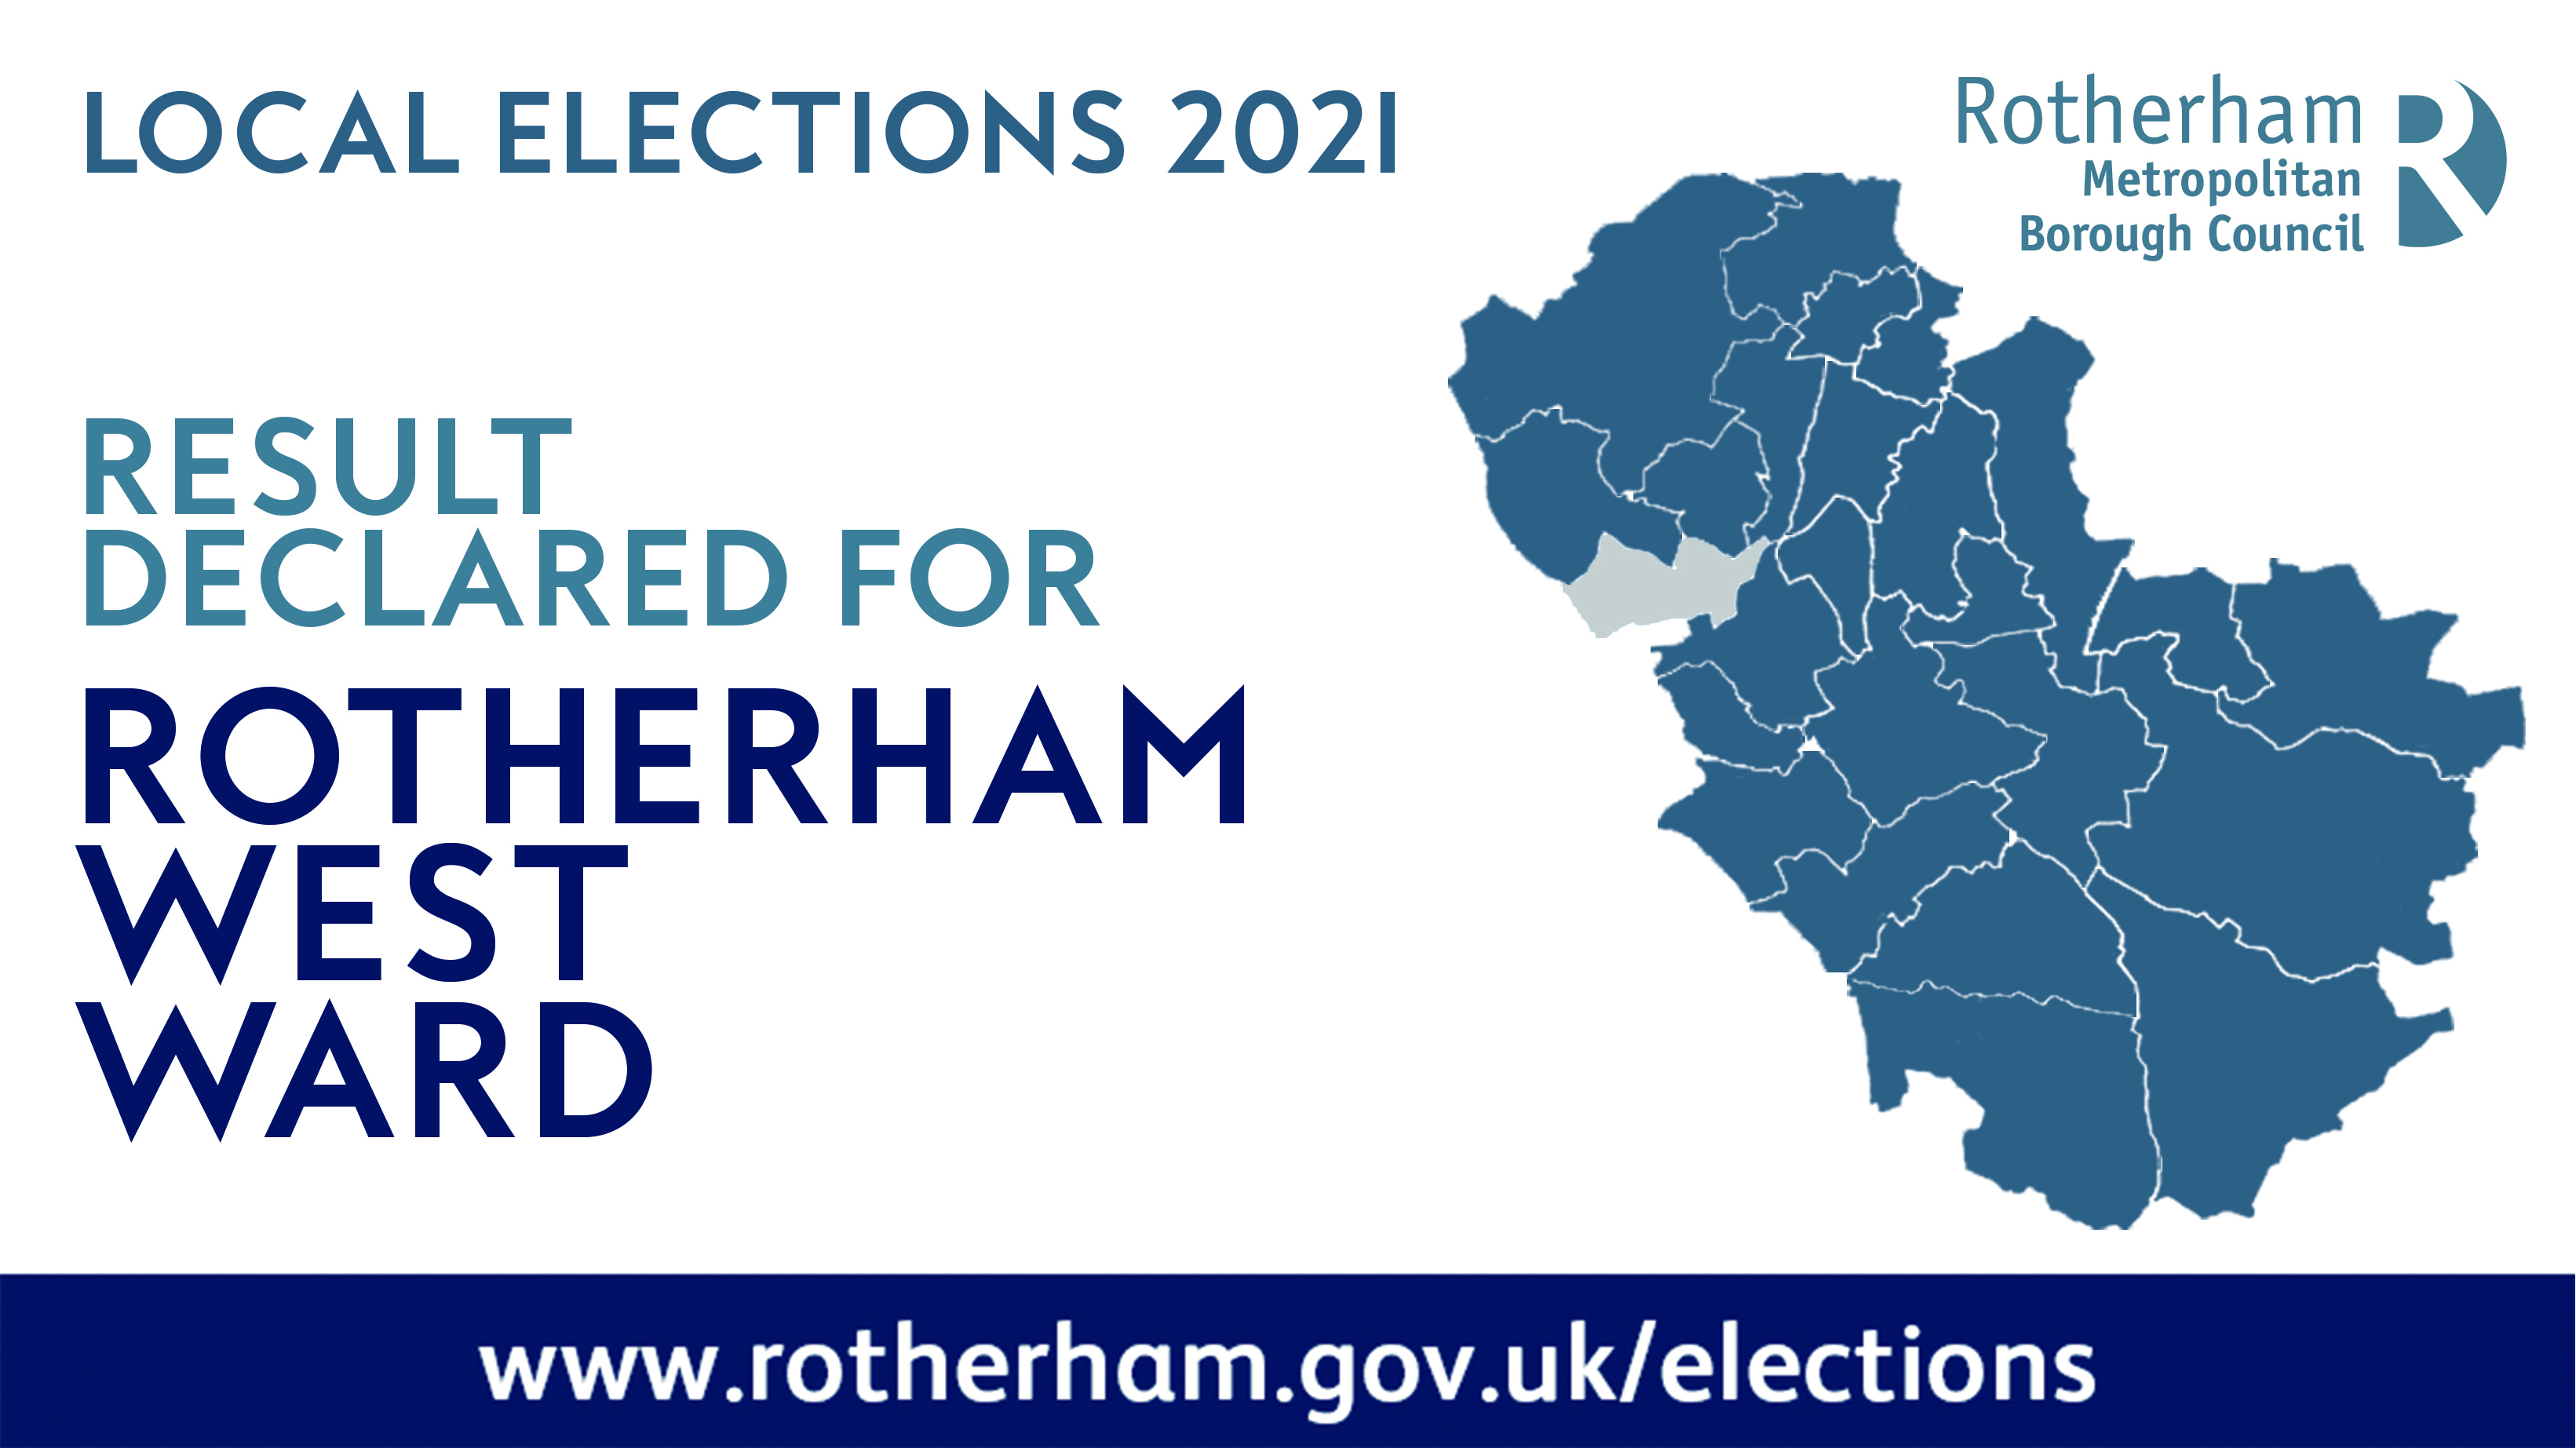 Rotherham West ward declared